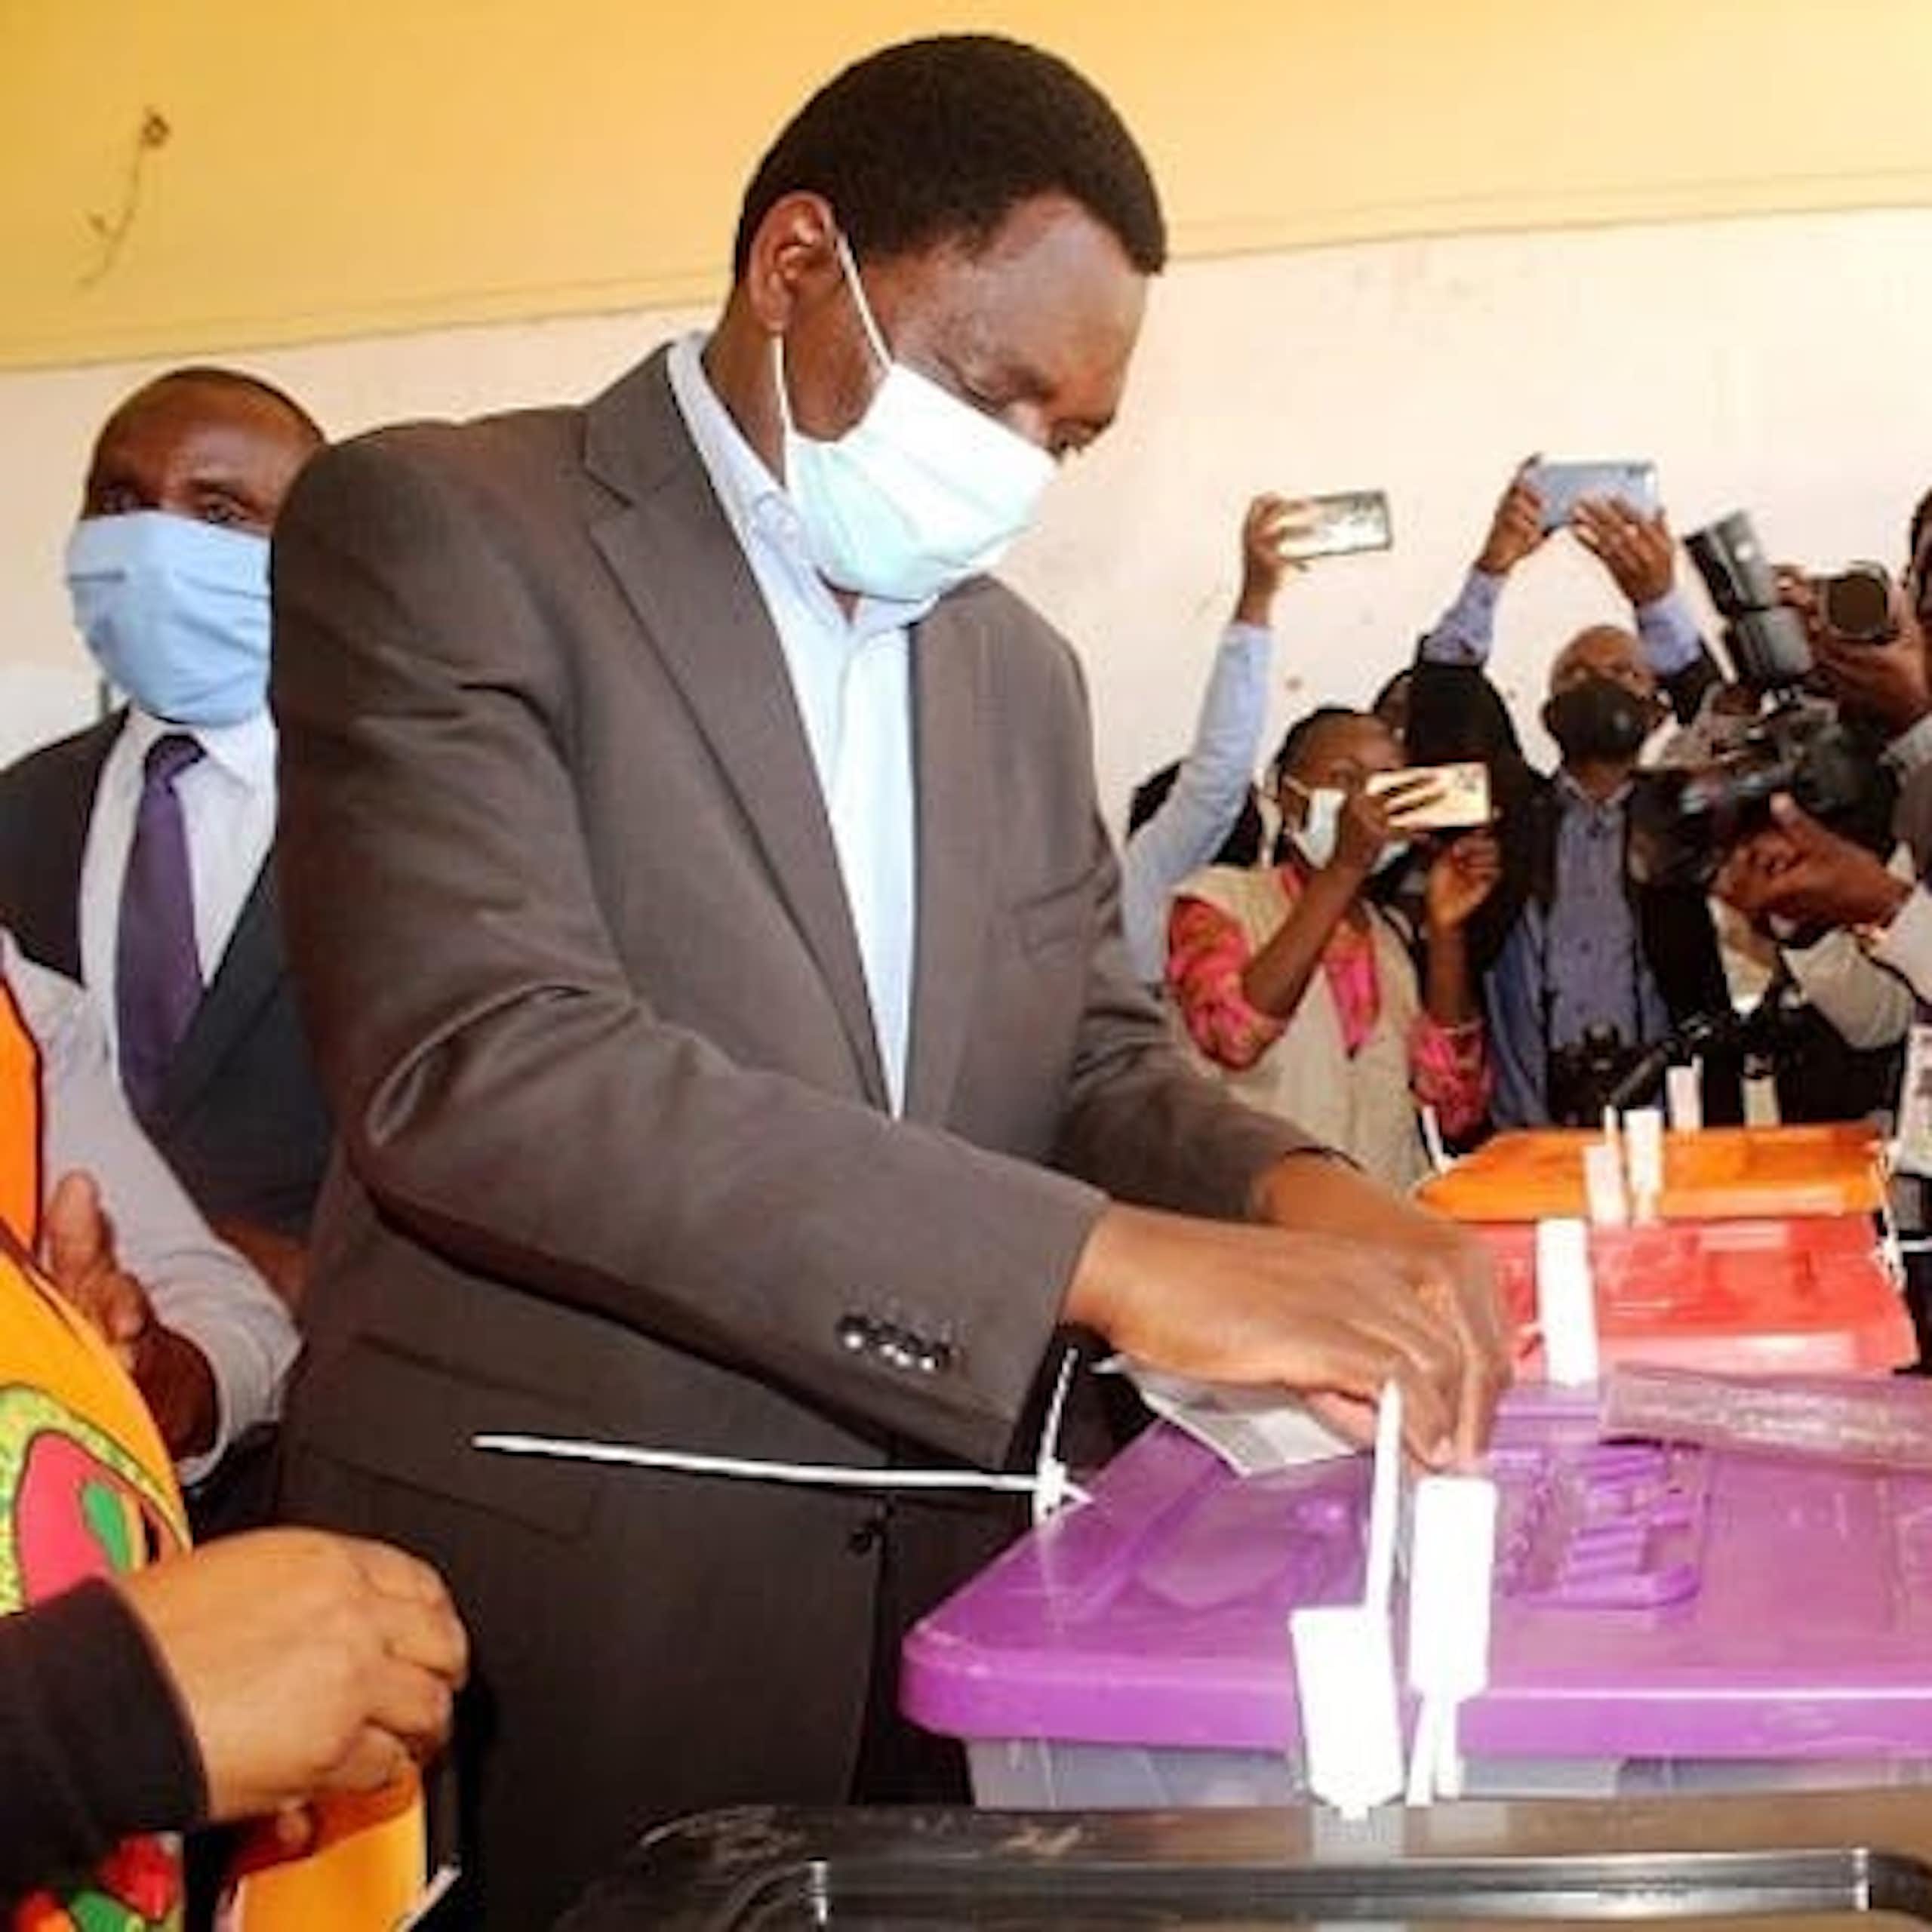 Les défis auxquels les organes électoraux africains sont confrontés vont au-delà d'un simple “régression démocratique”